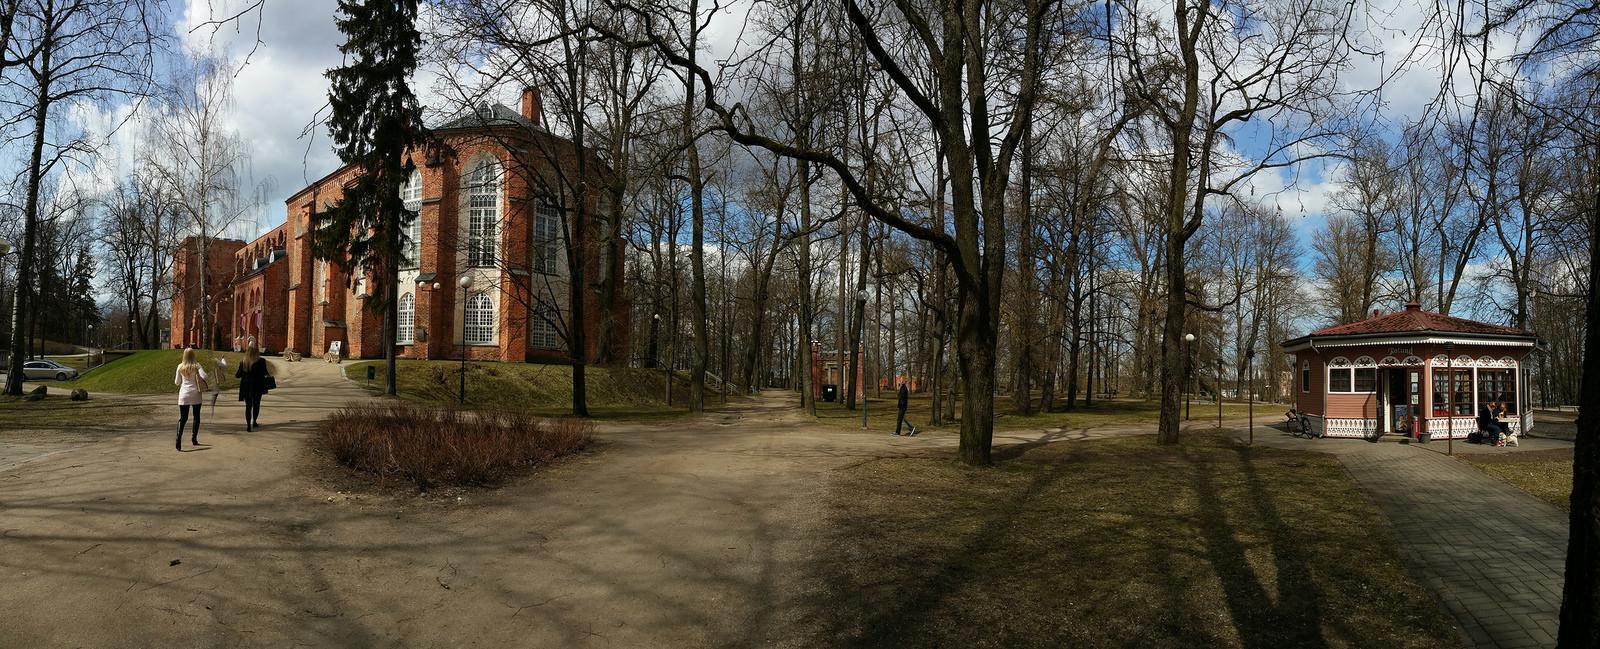 Tartu kui UNESCO kirjanduslinn - kirjanduslik jalutuskäik giidiga: Toomemägi